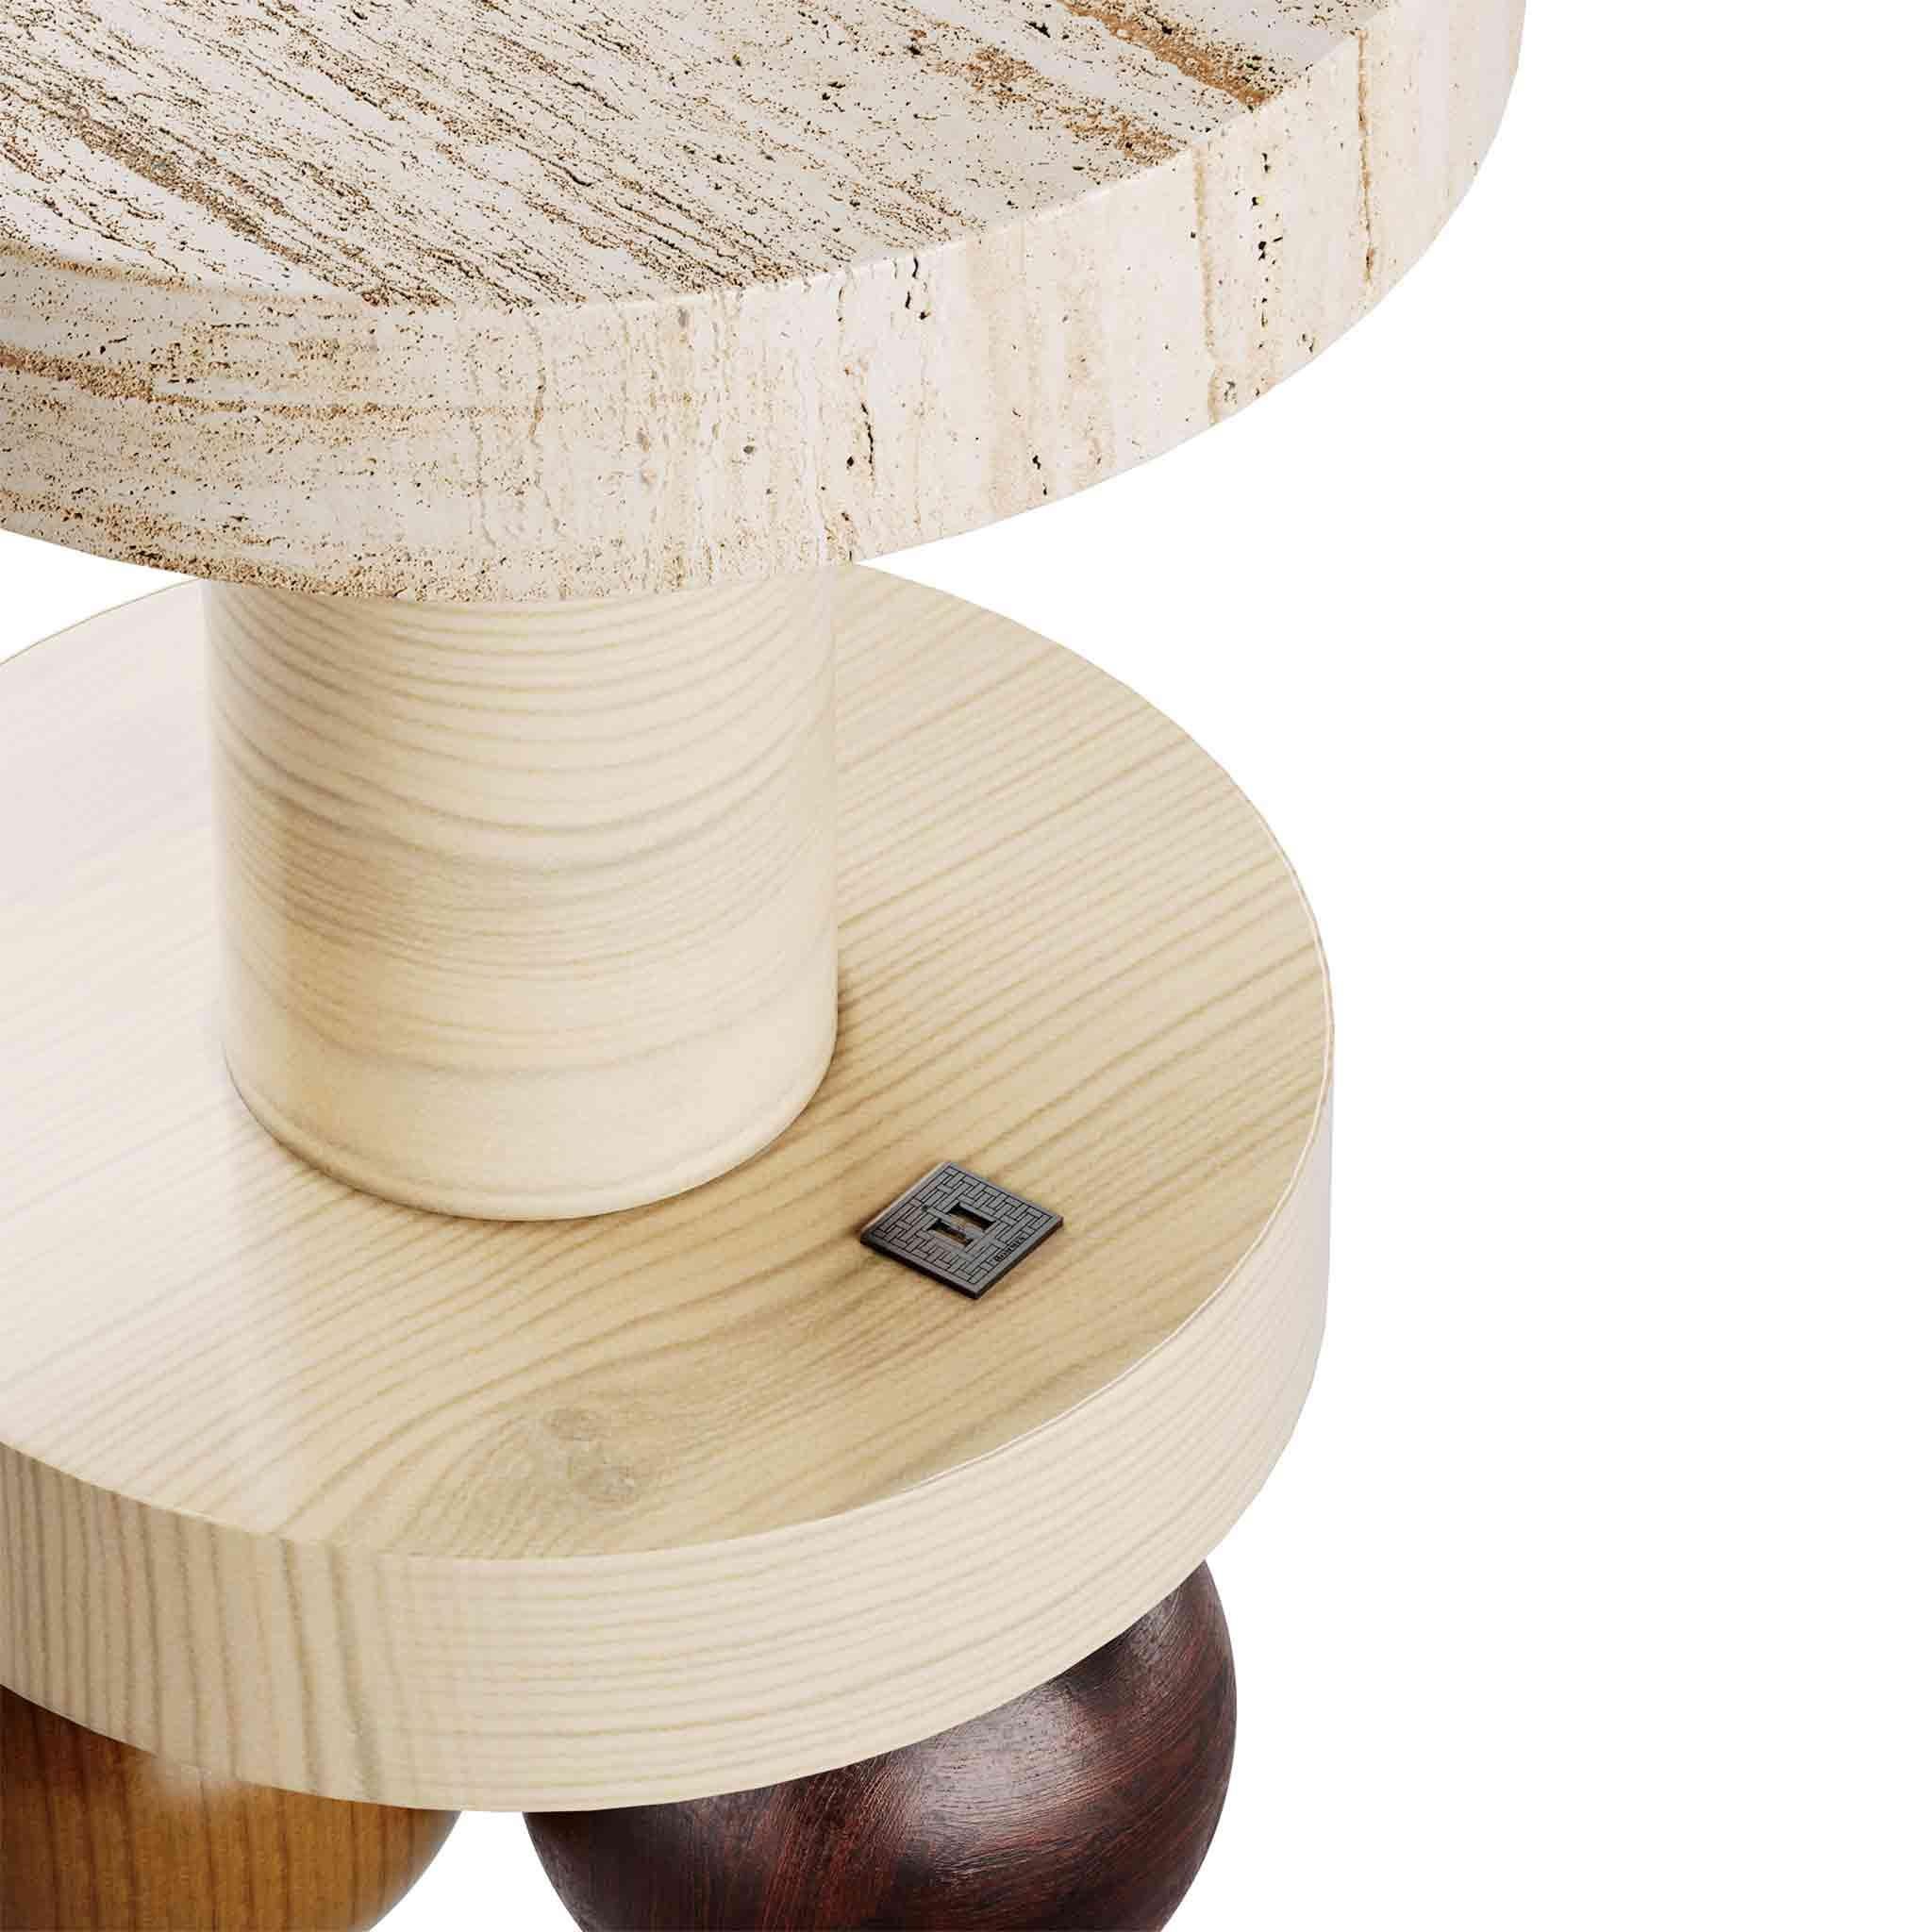 Der Duna Beistelltisch ist ein skulpturaler Tisch aus Travertin, der in keinem modernen Wohnzimmer fehlen darf, auch nicht in Ihrem. Mit einer exquisiten Auswahl an MATERIALEN bringt dieser zeitgenössische Tisch Modernität durch geometrische